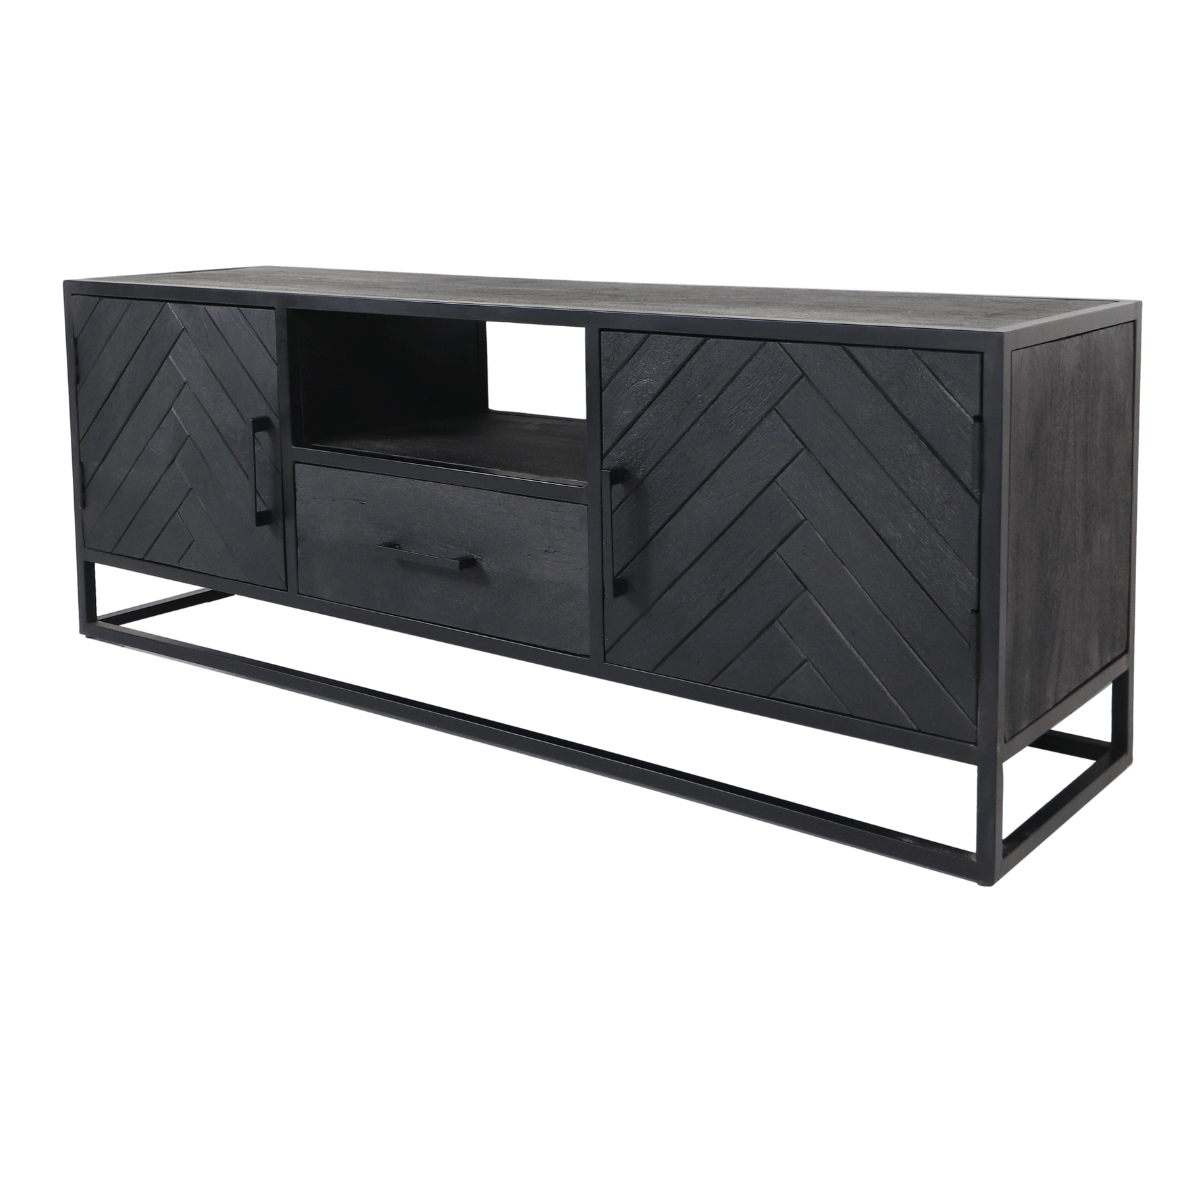 omhelzing Aas Buitensporig Verona tv-meubel 150x40x55 mangohout/metaal zwart van het woonmerk HSM  collection